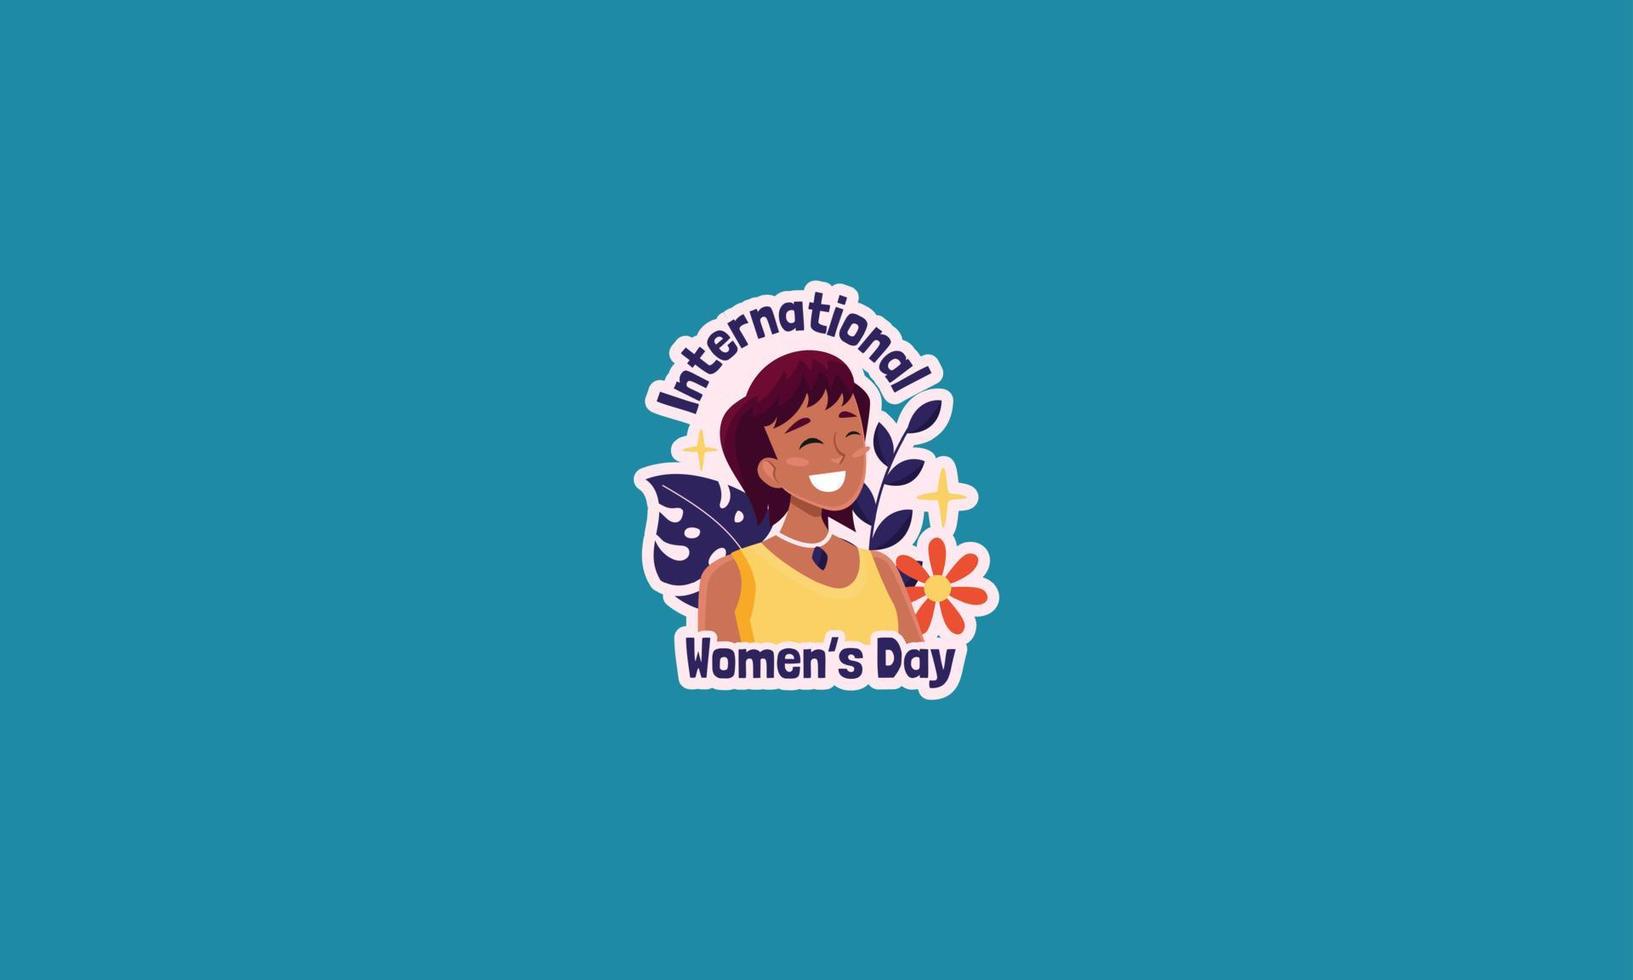 diseño plano del ejemplo del vector de la celebración del día de la mujer